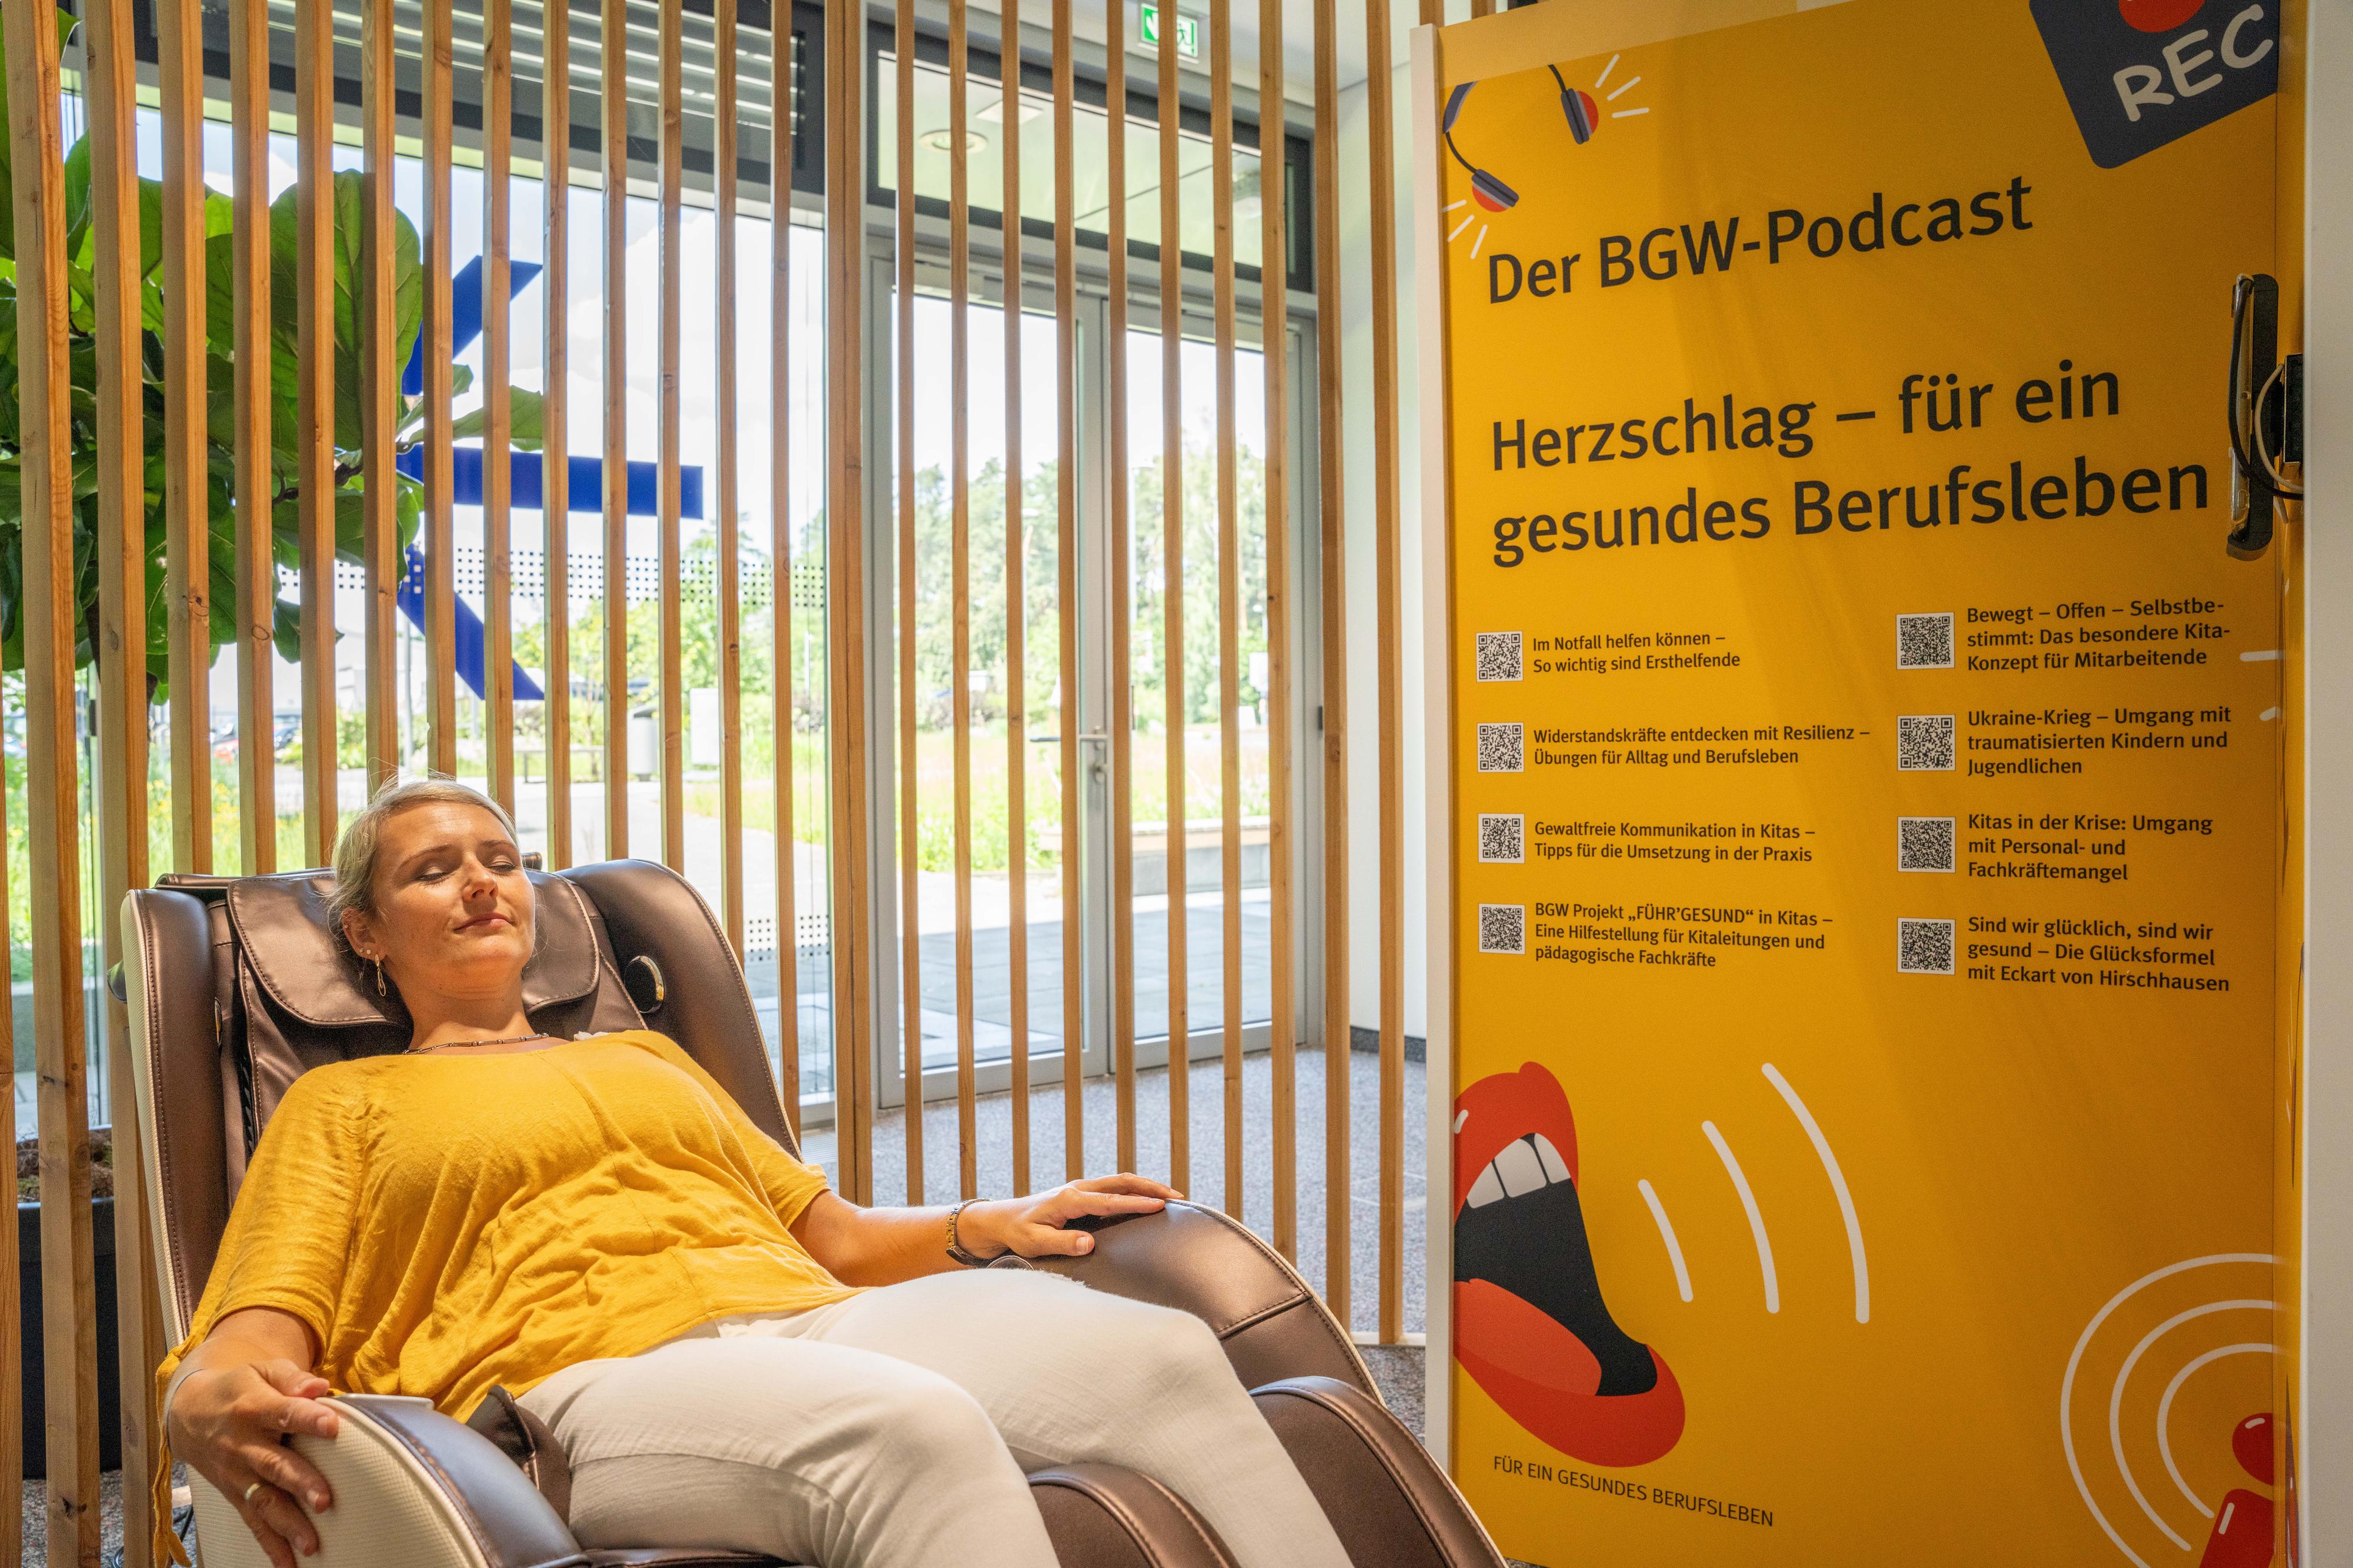 Eine Frau liegt mit geschlossenen Augen in einem Liegesessel, daneben Plakatwand unter anderem mit Text "Der BGW-Podcast. Herzschlag - für ein gesundes Berufsleben"